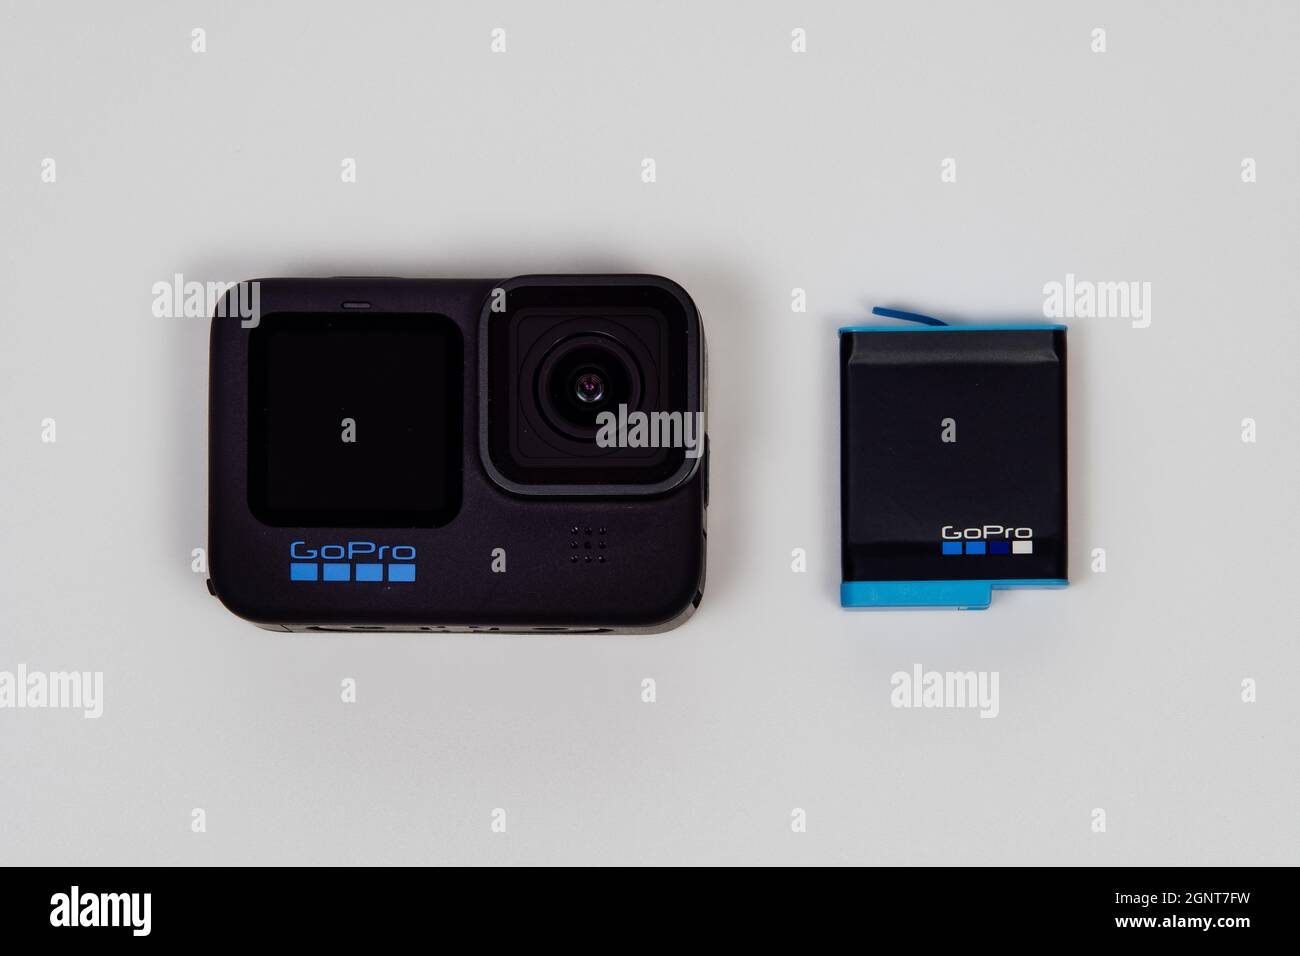 Batterie gopro 10 Banque de photographies et d'images à haute résolution -  Alamy